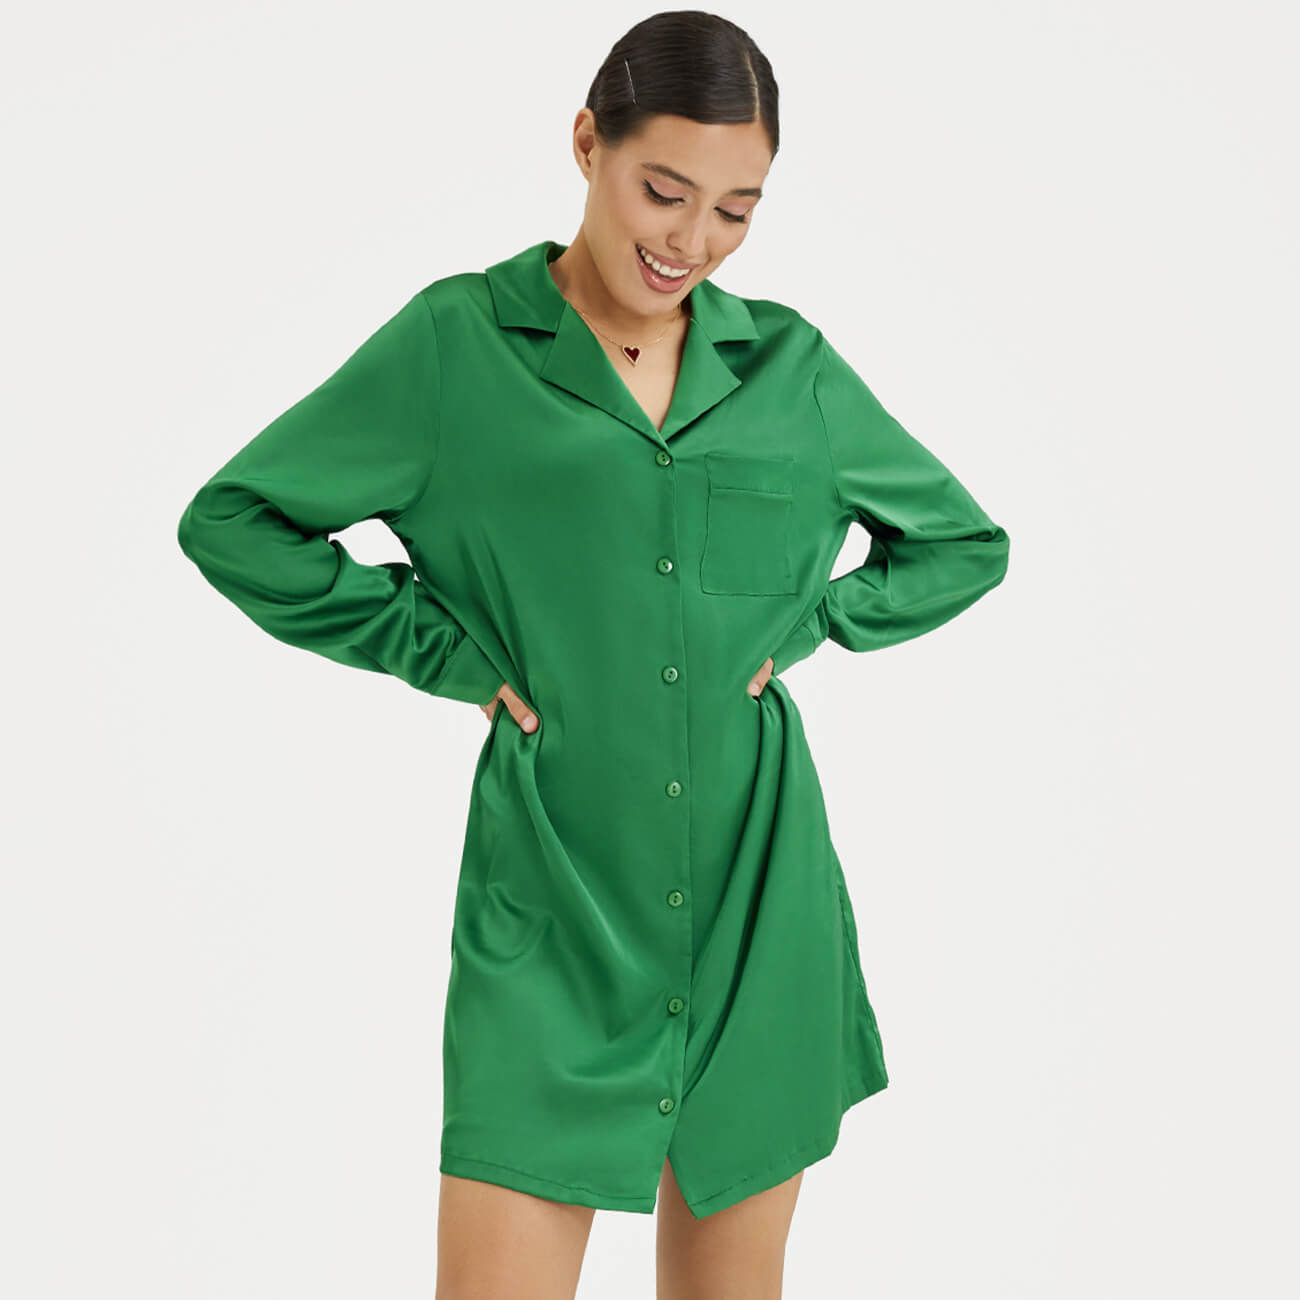 Рубашка женская, р. XL, удлиненная, с длинным рукавом, полиэстер/эластан, зеленая, Madeline рубашка женская р m удлиненная с длинным рукавом полиэстер эластан зеленая madeline